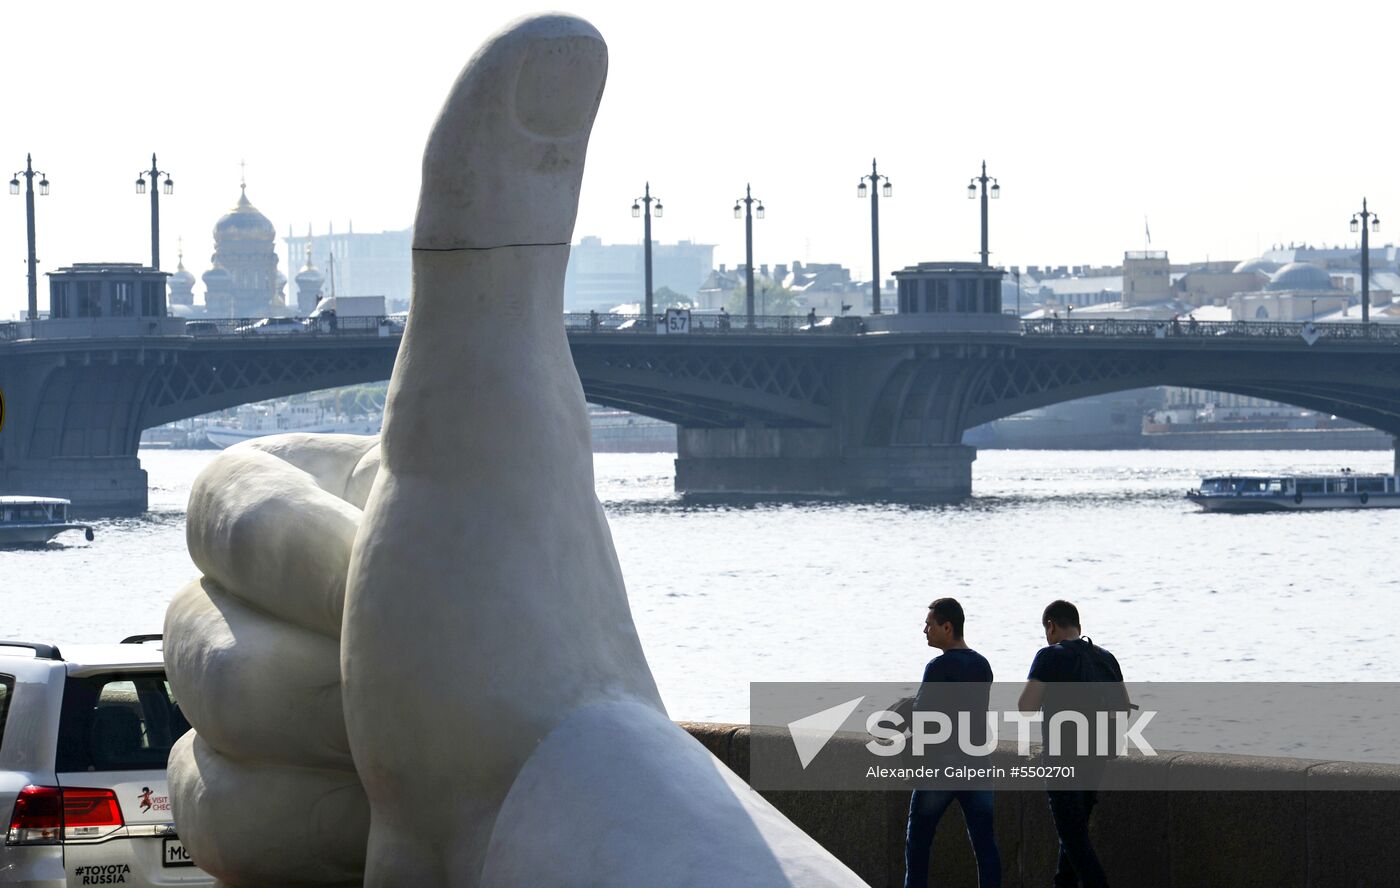 Giant figure 'Like' in St. Petersburg